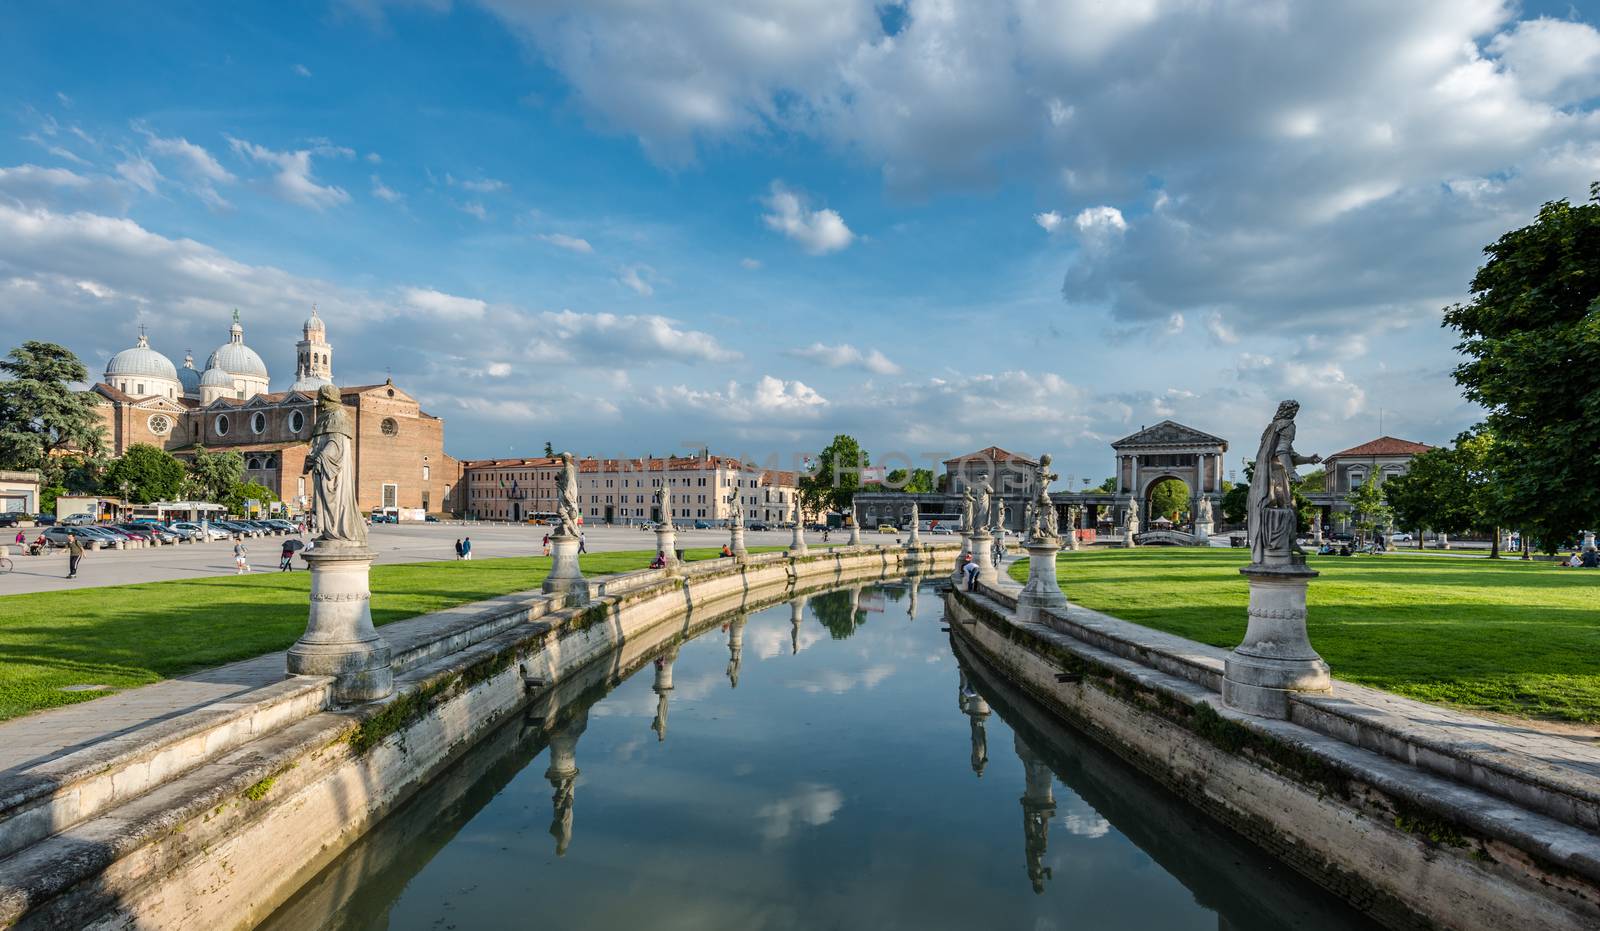 View of the river with statues on Prato della Valle in Padova, Veneto, Italy